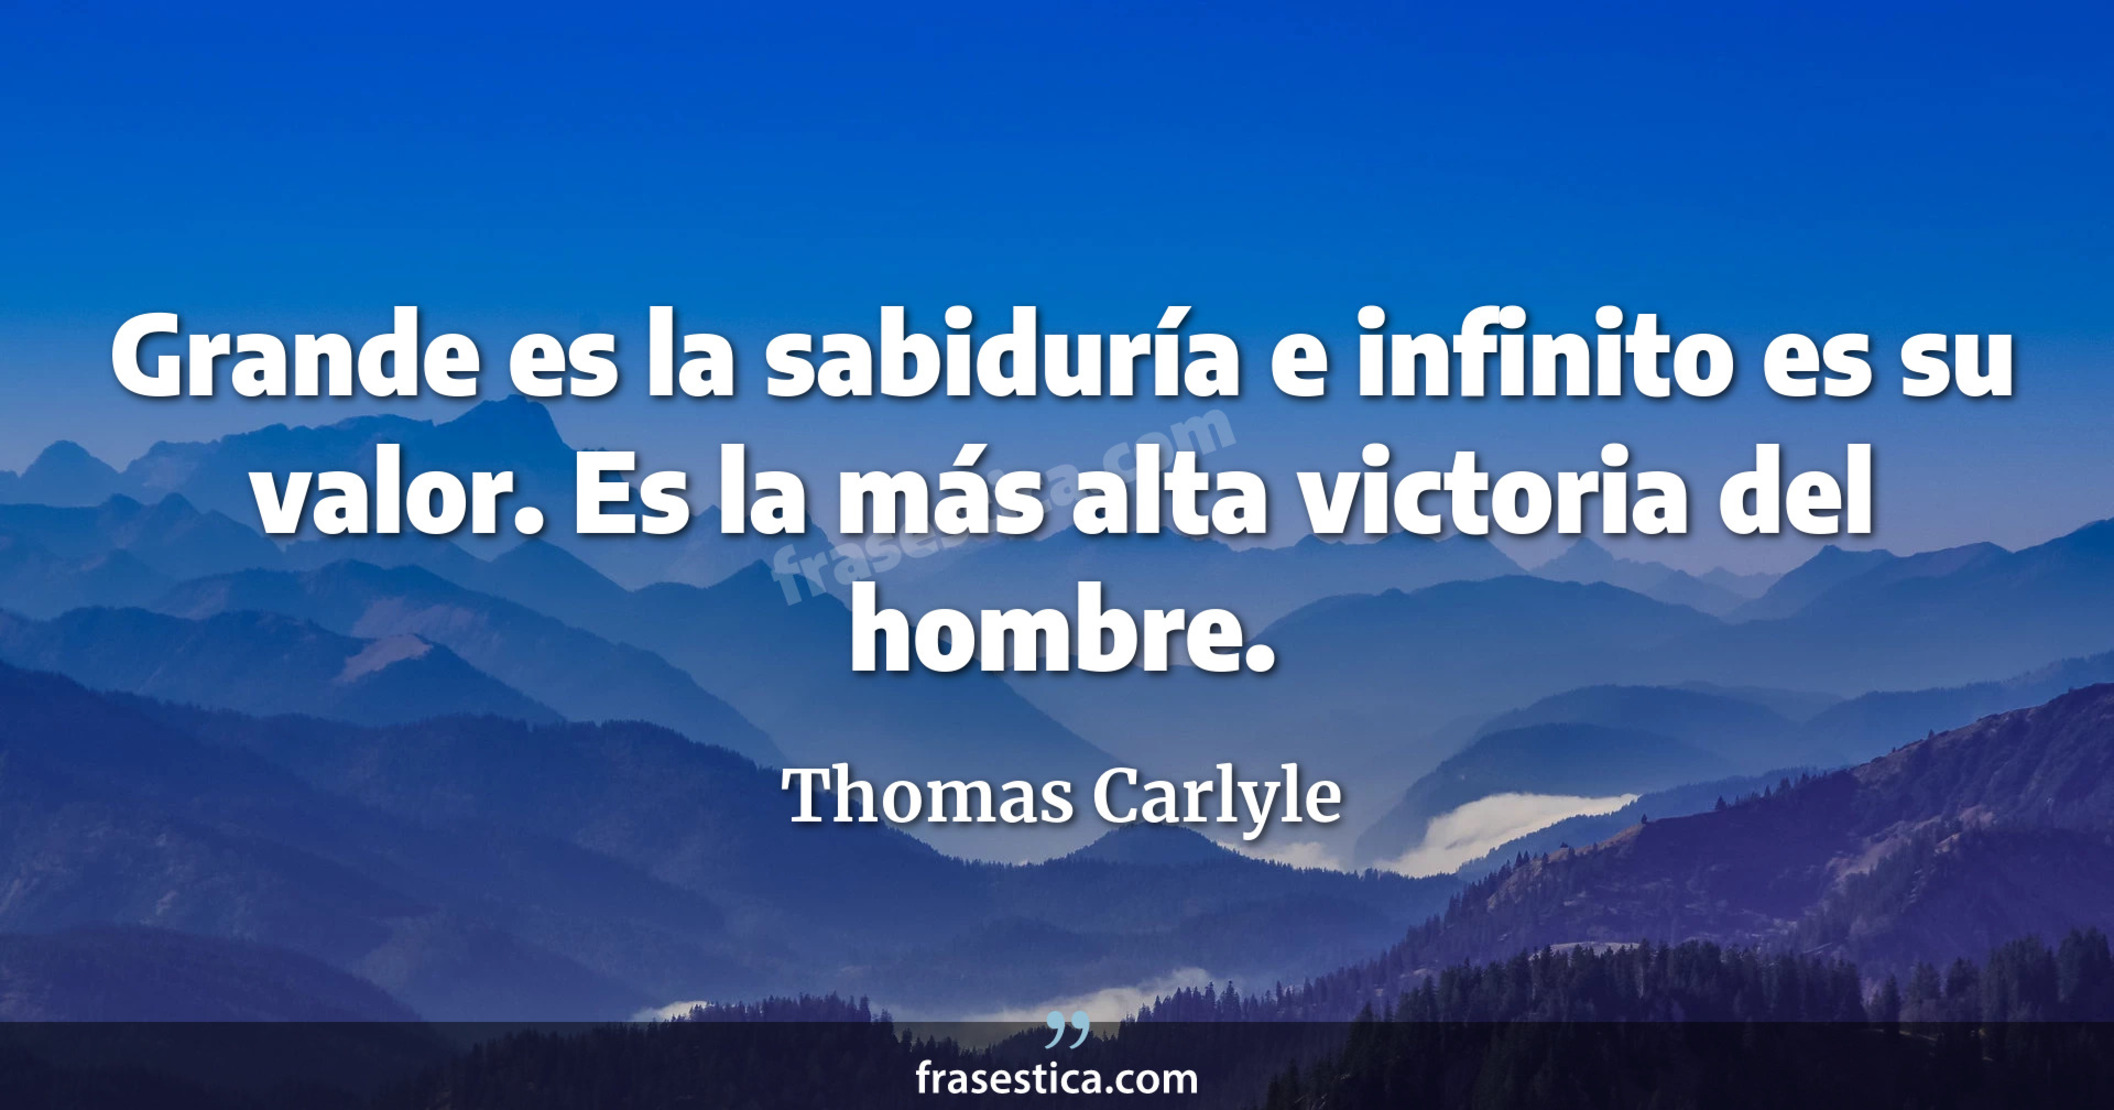 Grande es la sabiduría e infinito es su valor. Es la más alta victoria del hombre. - Thomas Carlyle